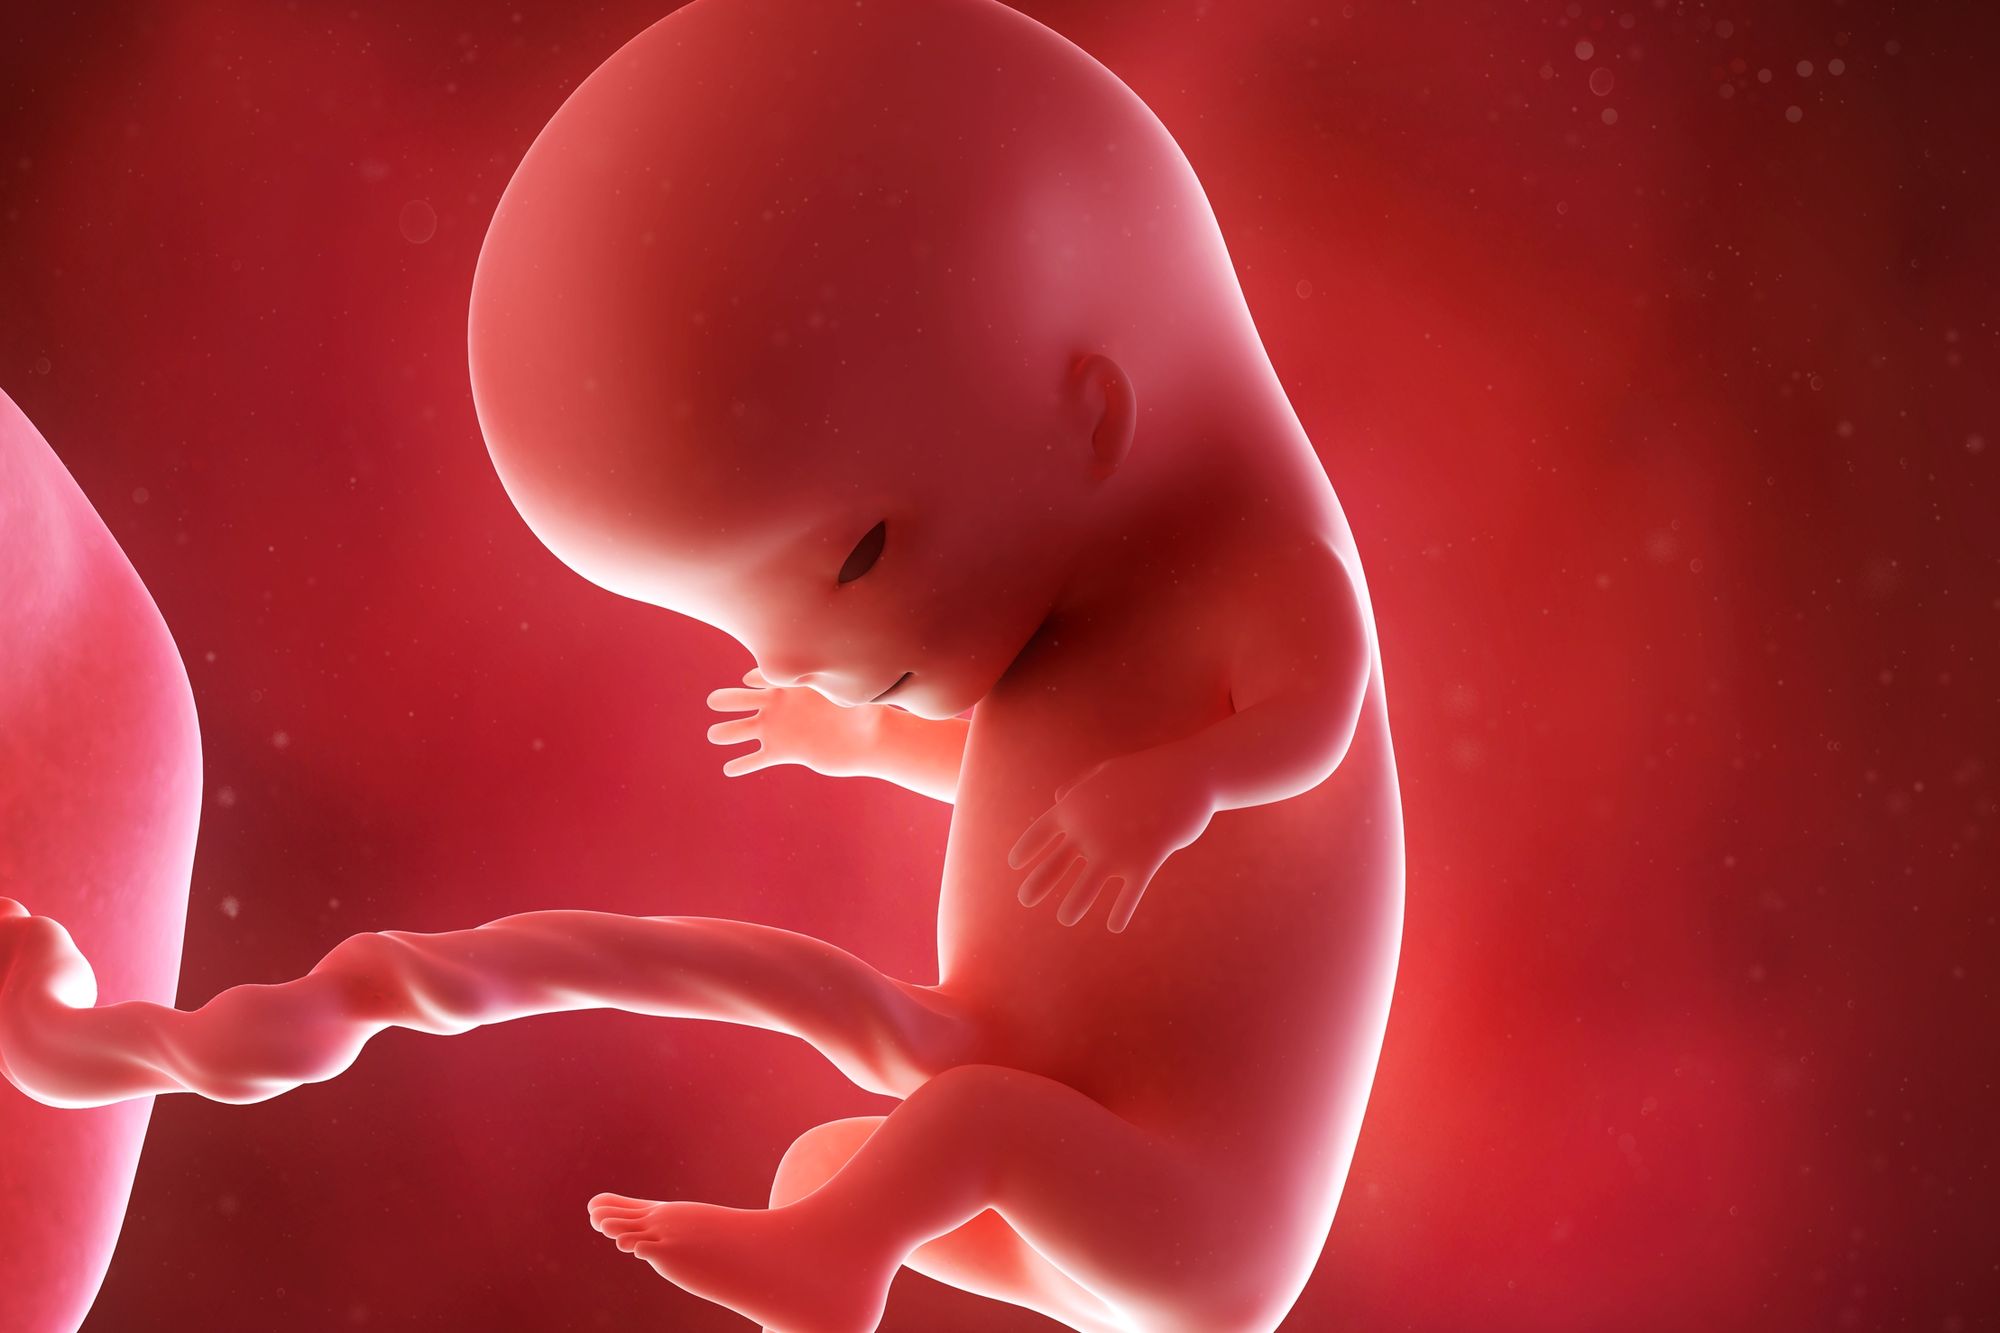 Développement de l'embryon et du foetus - Symptômes et traitement -  Doctissimo